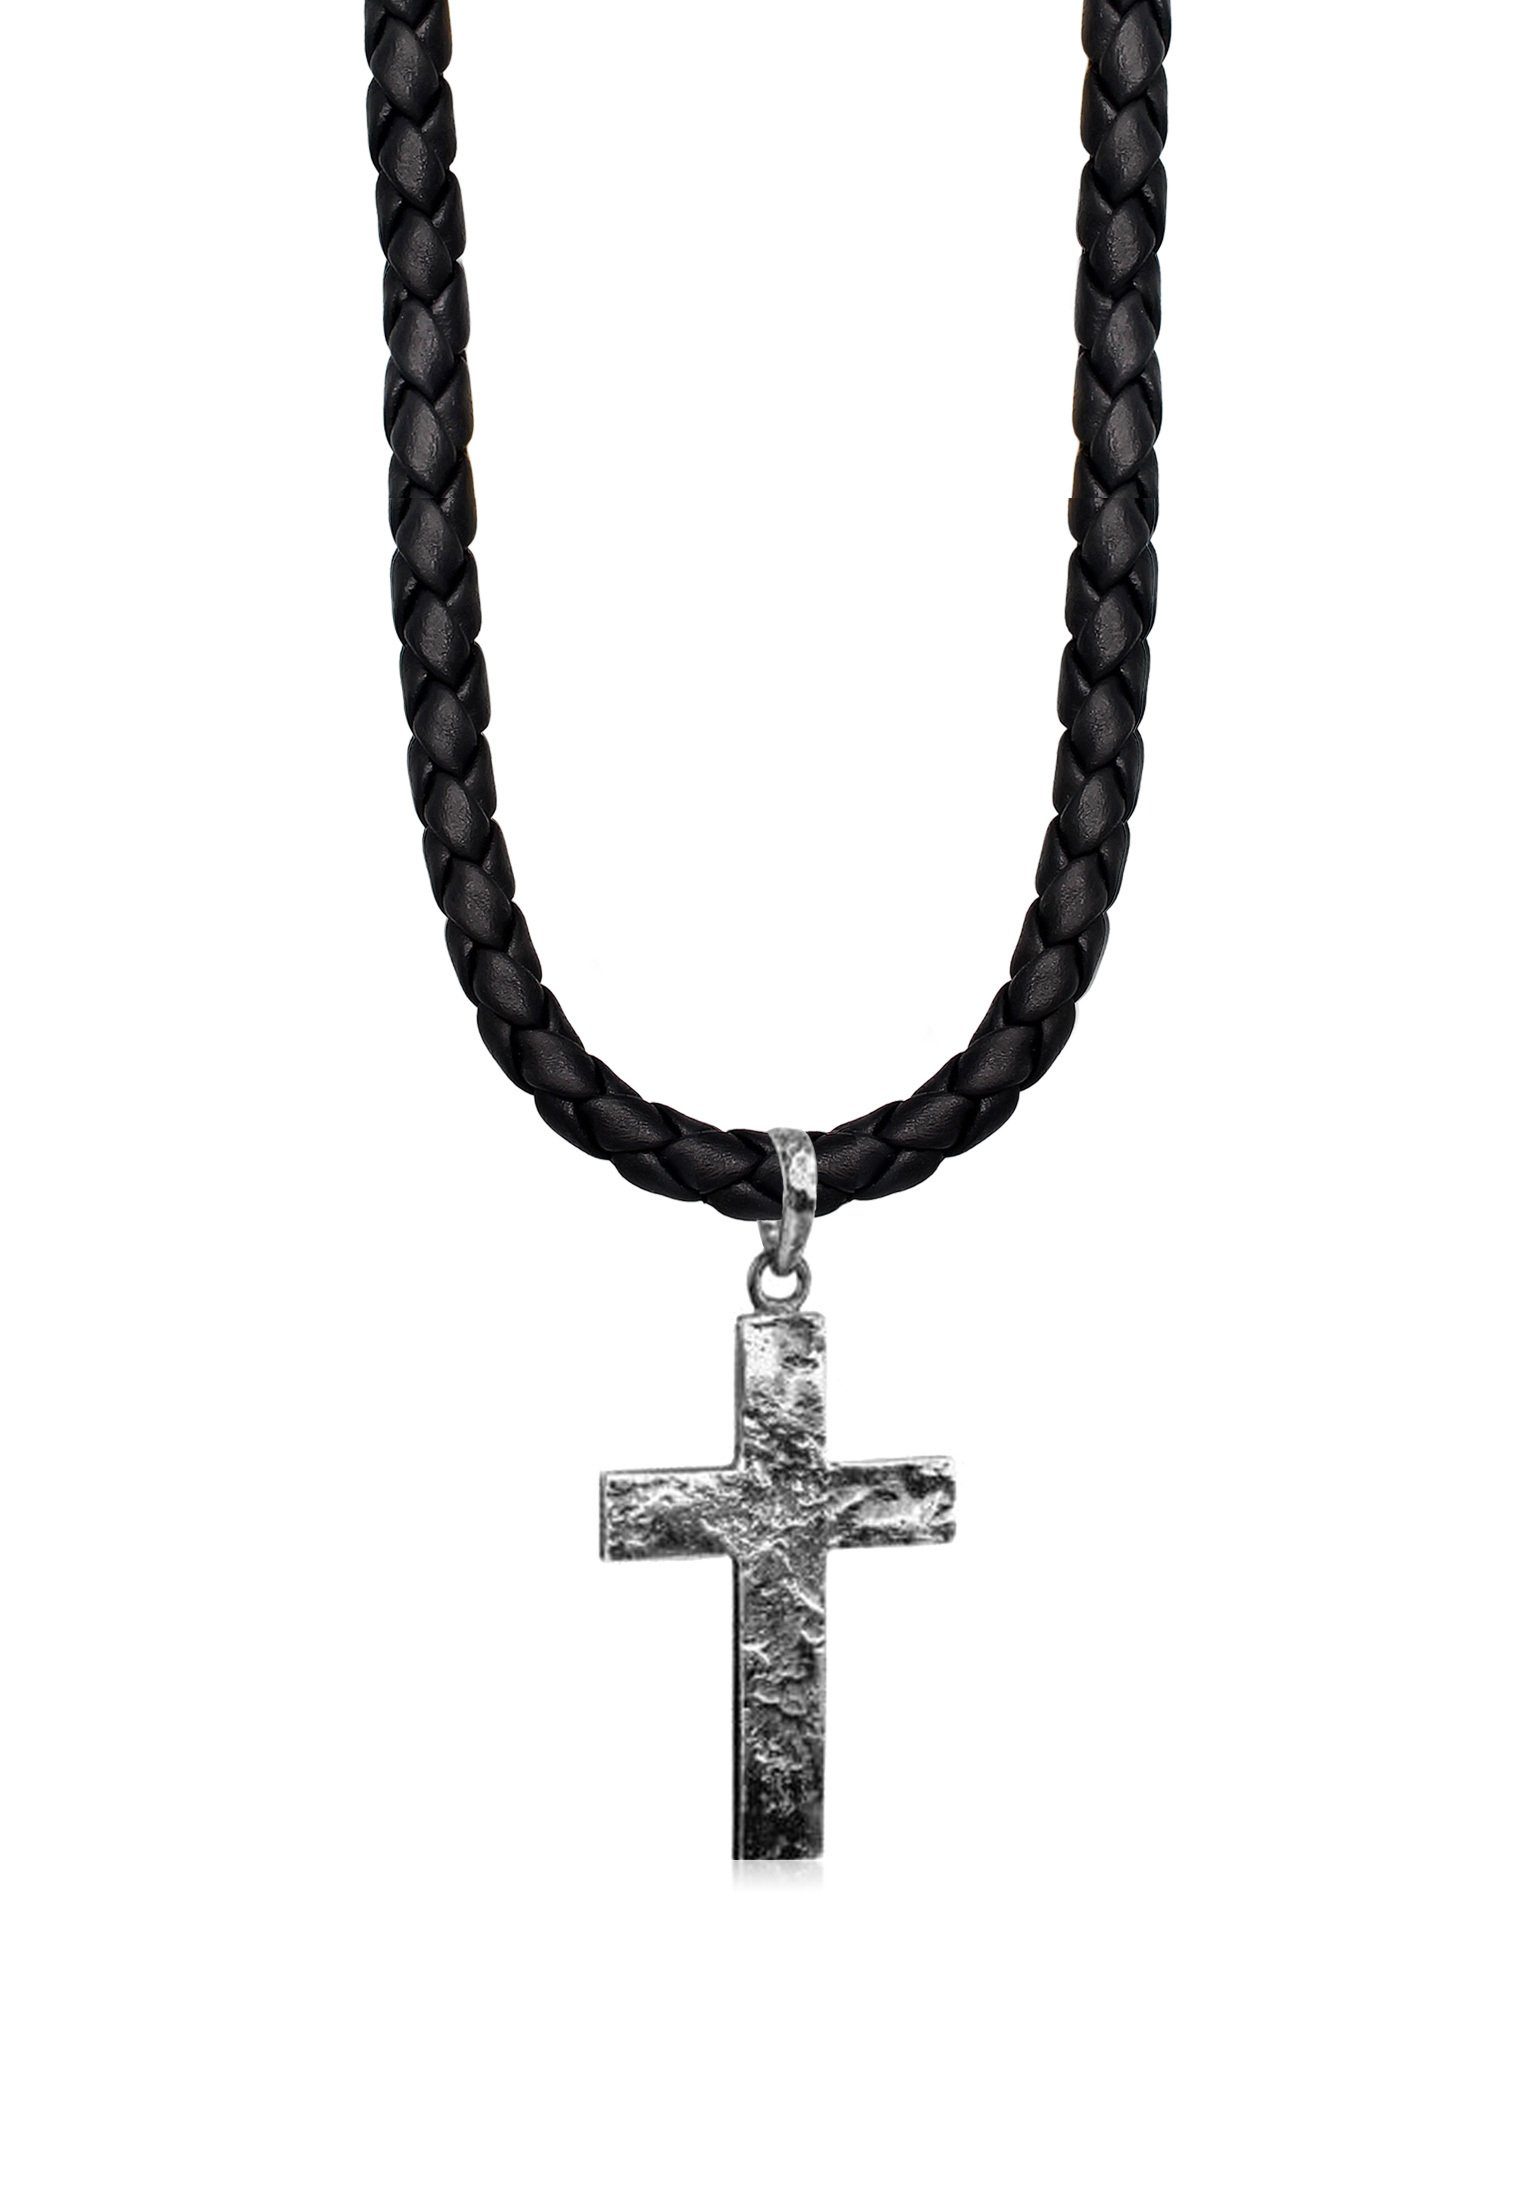 Kuzzoi Kette mit Anhänger Herren Lederkette Kreuz Oxidiert Matt 925 Silber | Lange Ketten